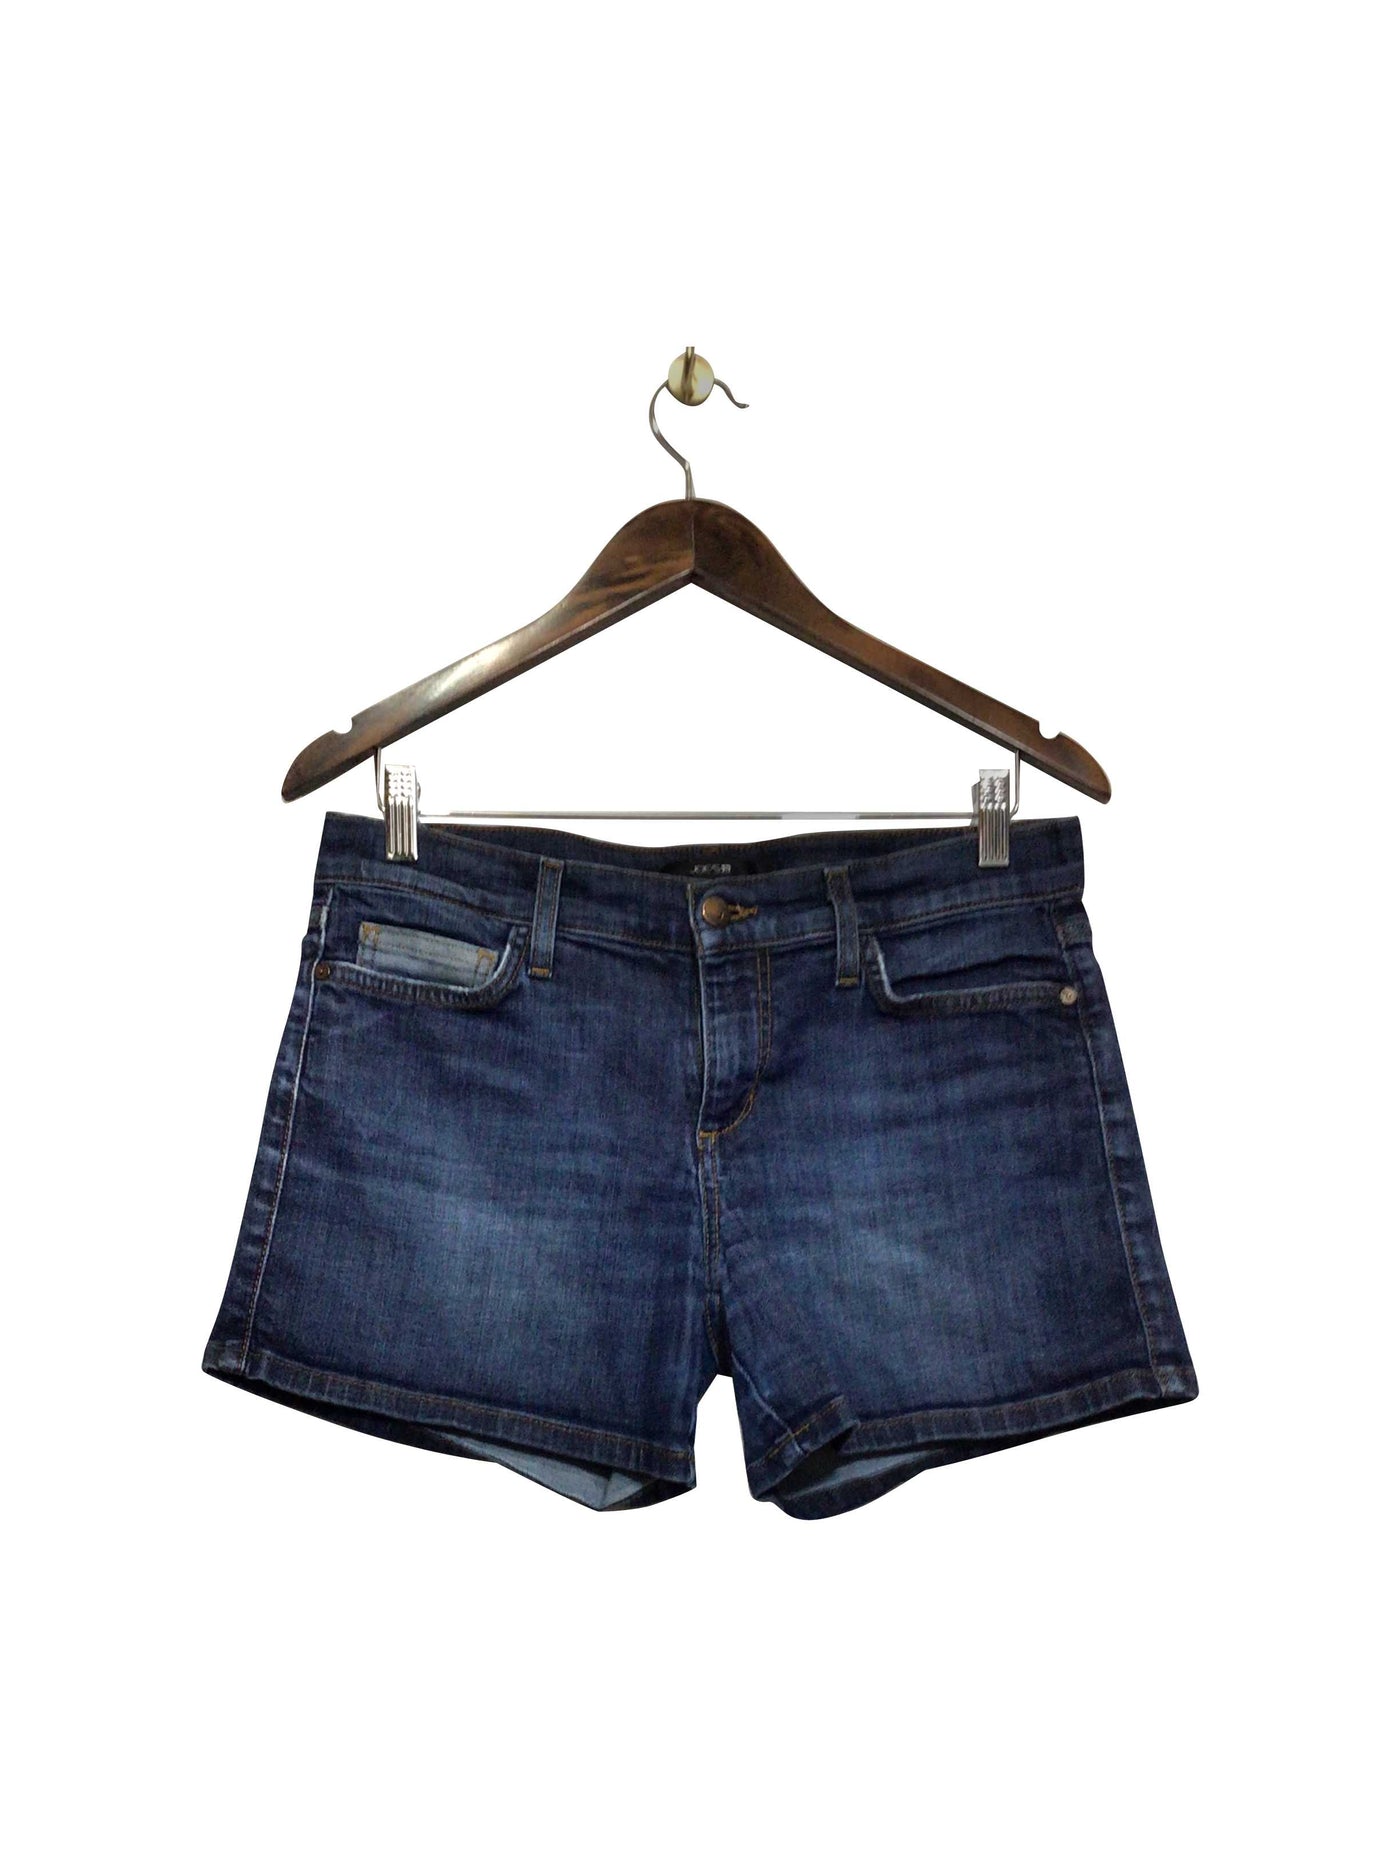 JOE'S Regular fit Jean Shorts in Blue  -  28  7.99 Koop